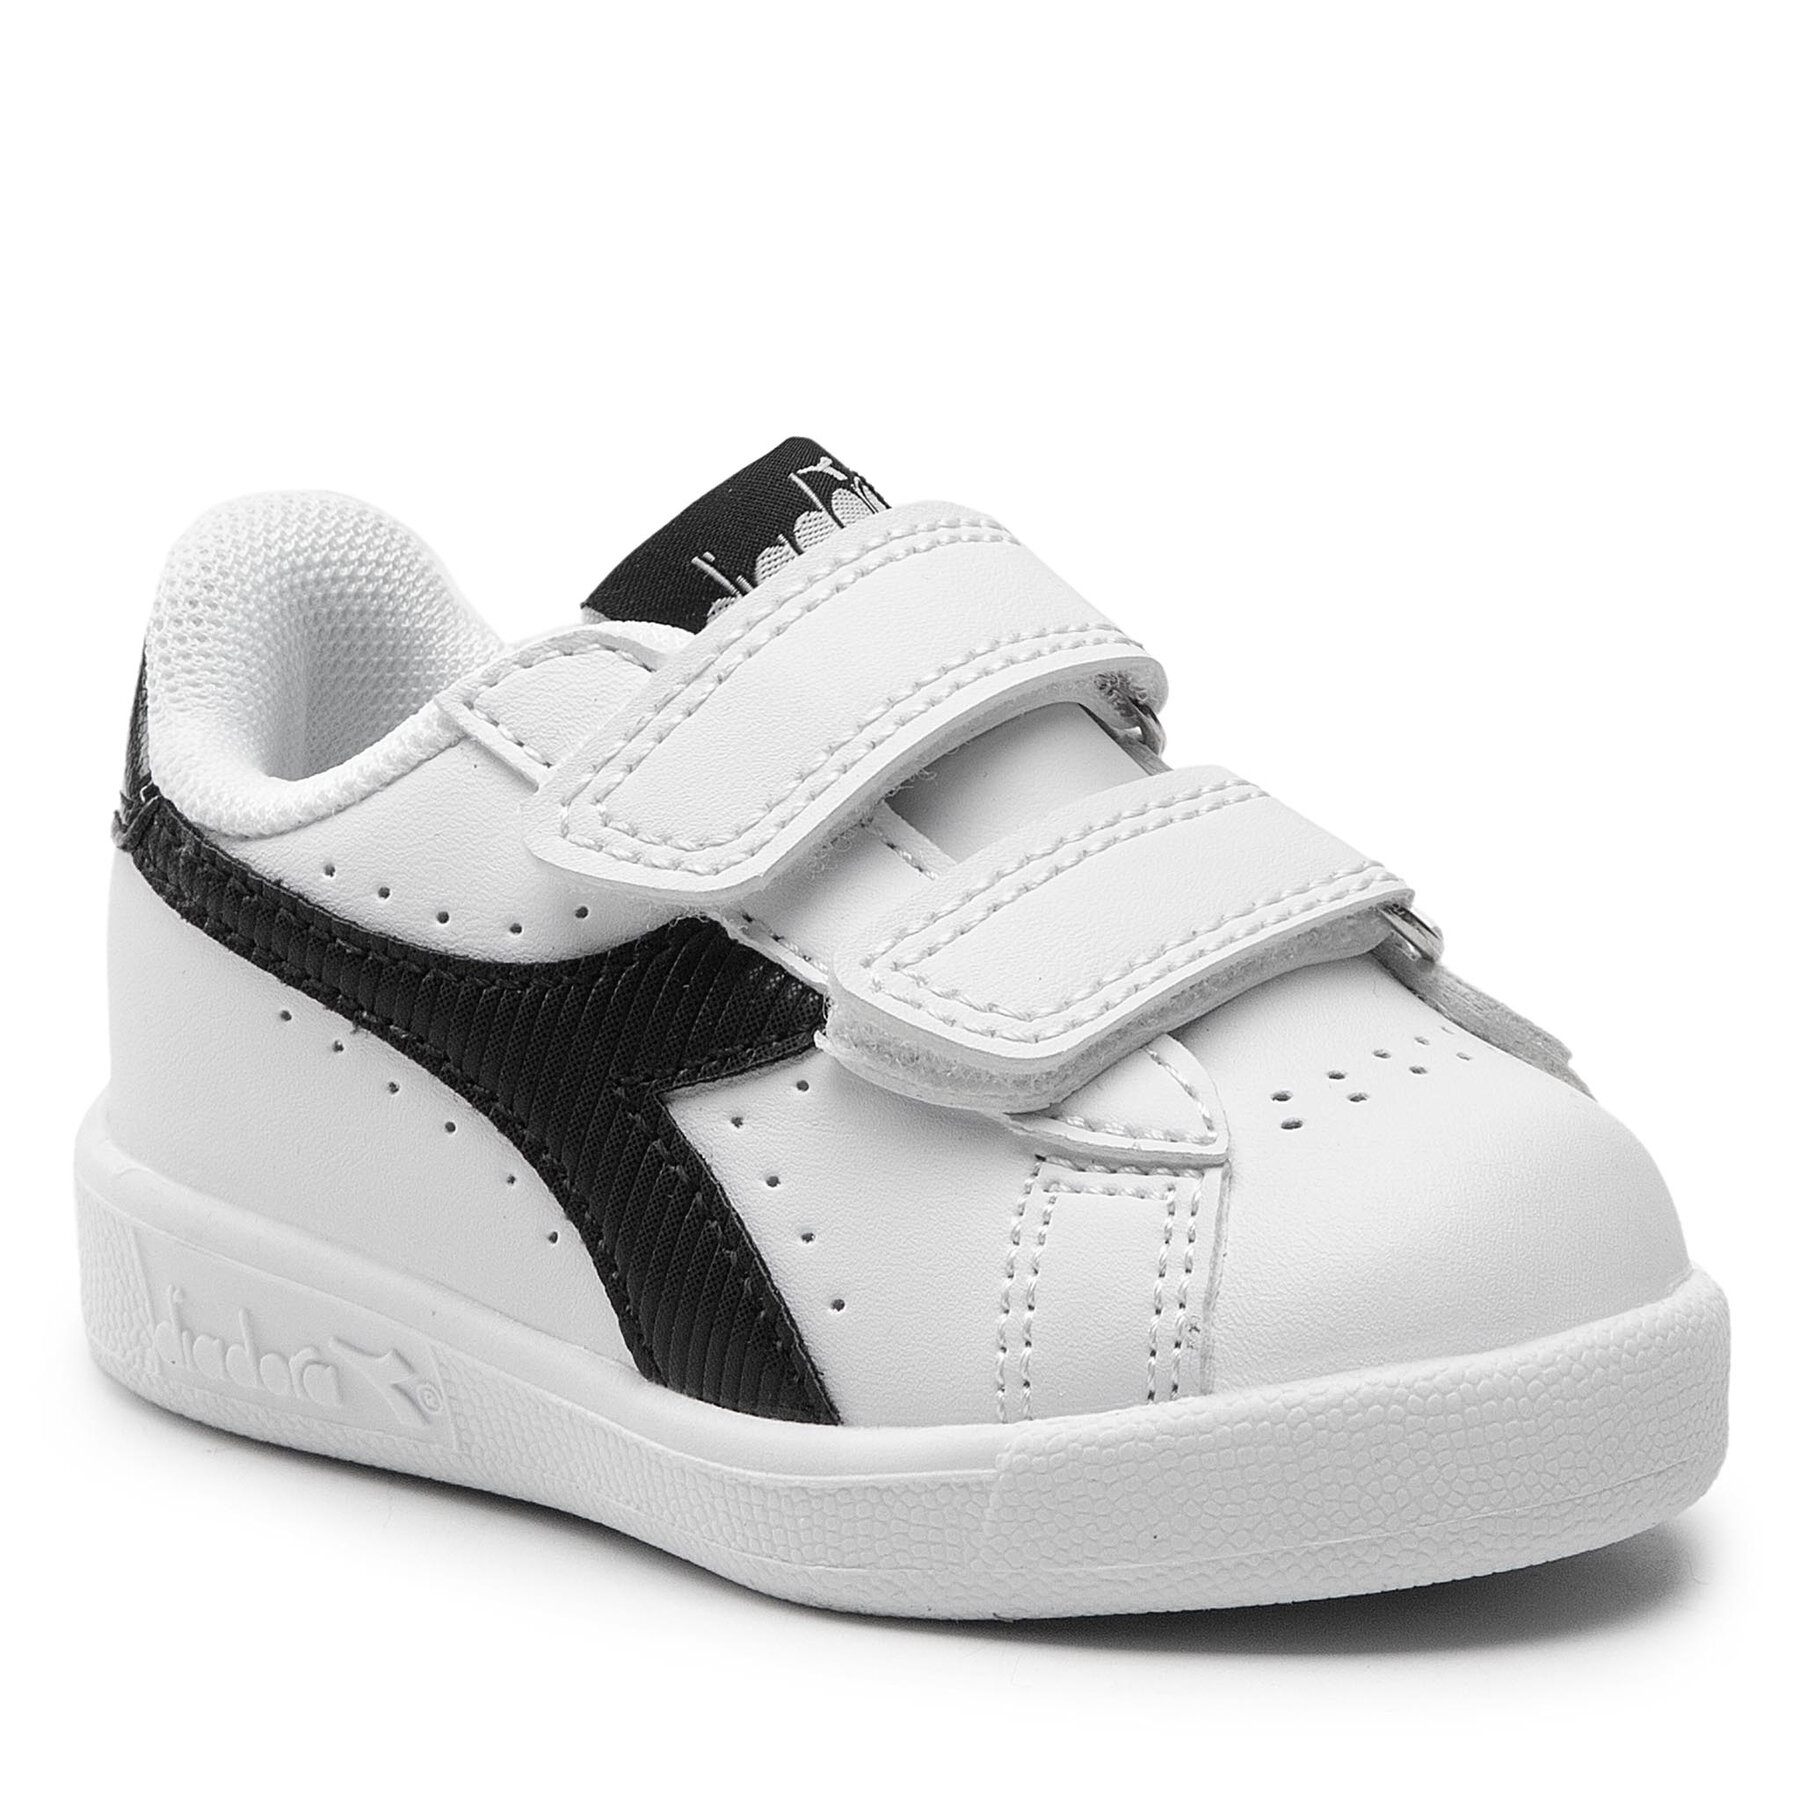 Sneakers Diadora Game P Td Girl 101.177018 01 C1880 White/White/Black